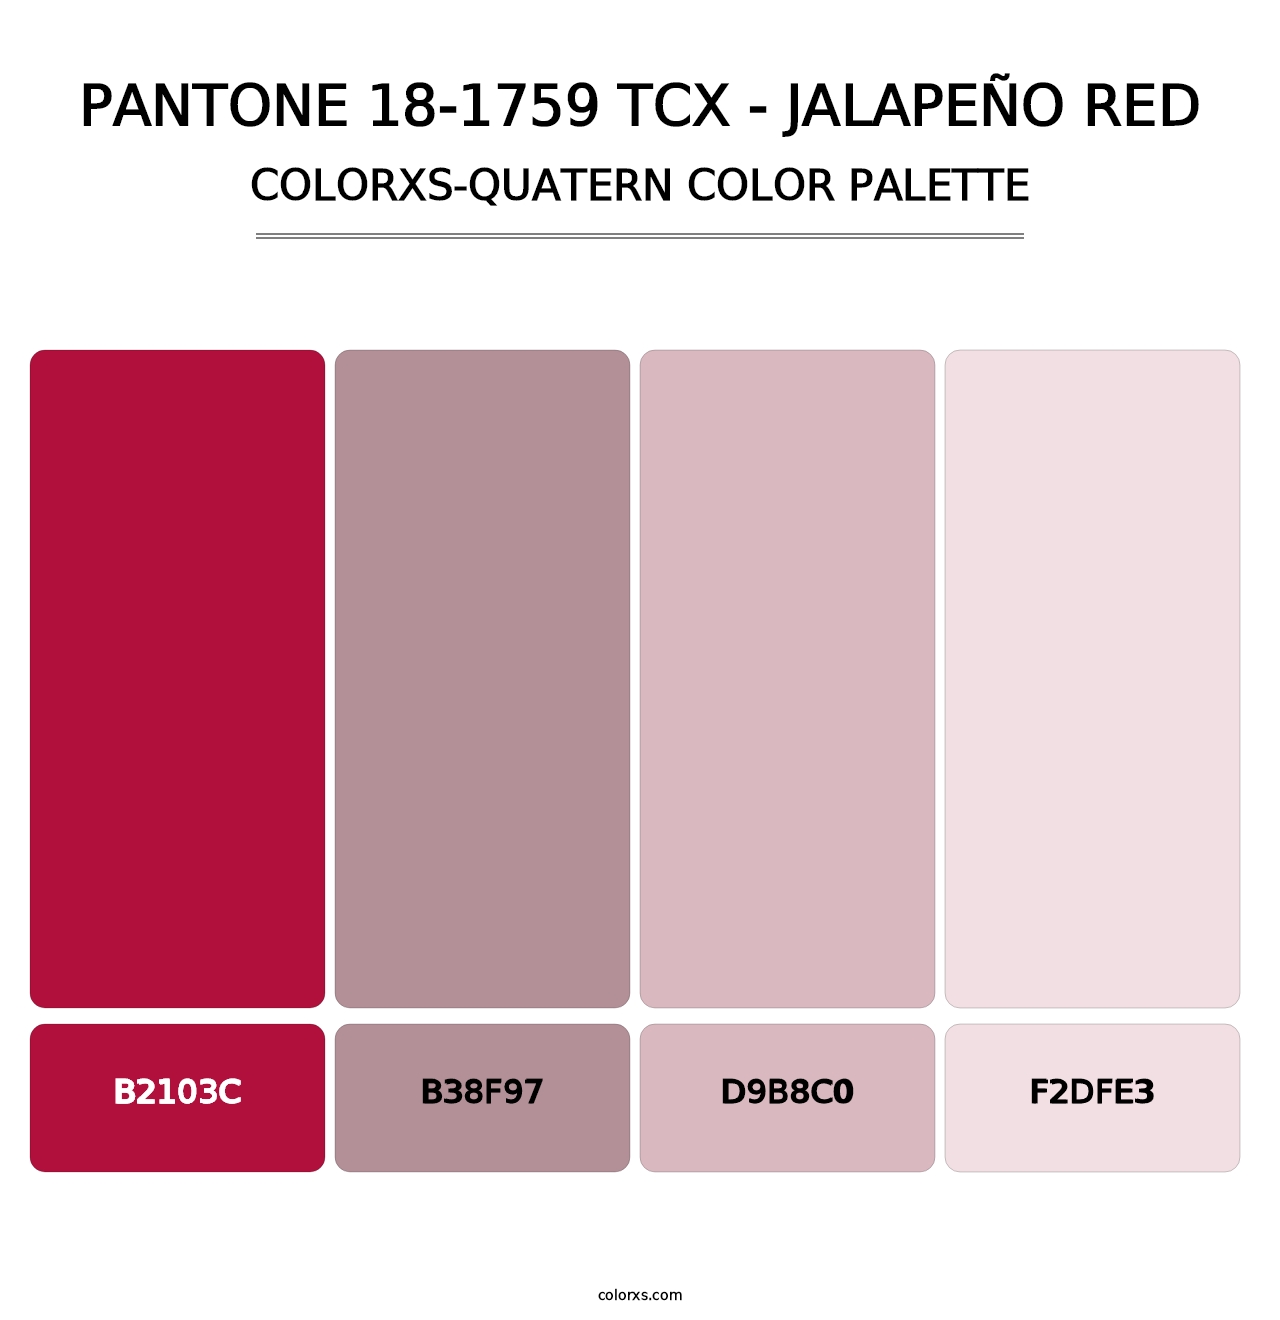 PANTONE 18-1759 TCX - Jalapeño Red - Colorxs Quatern Palette